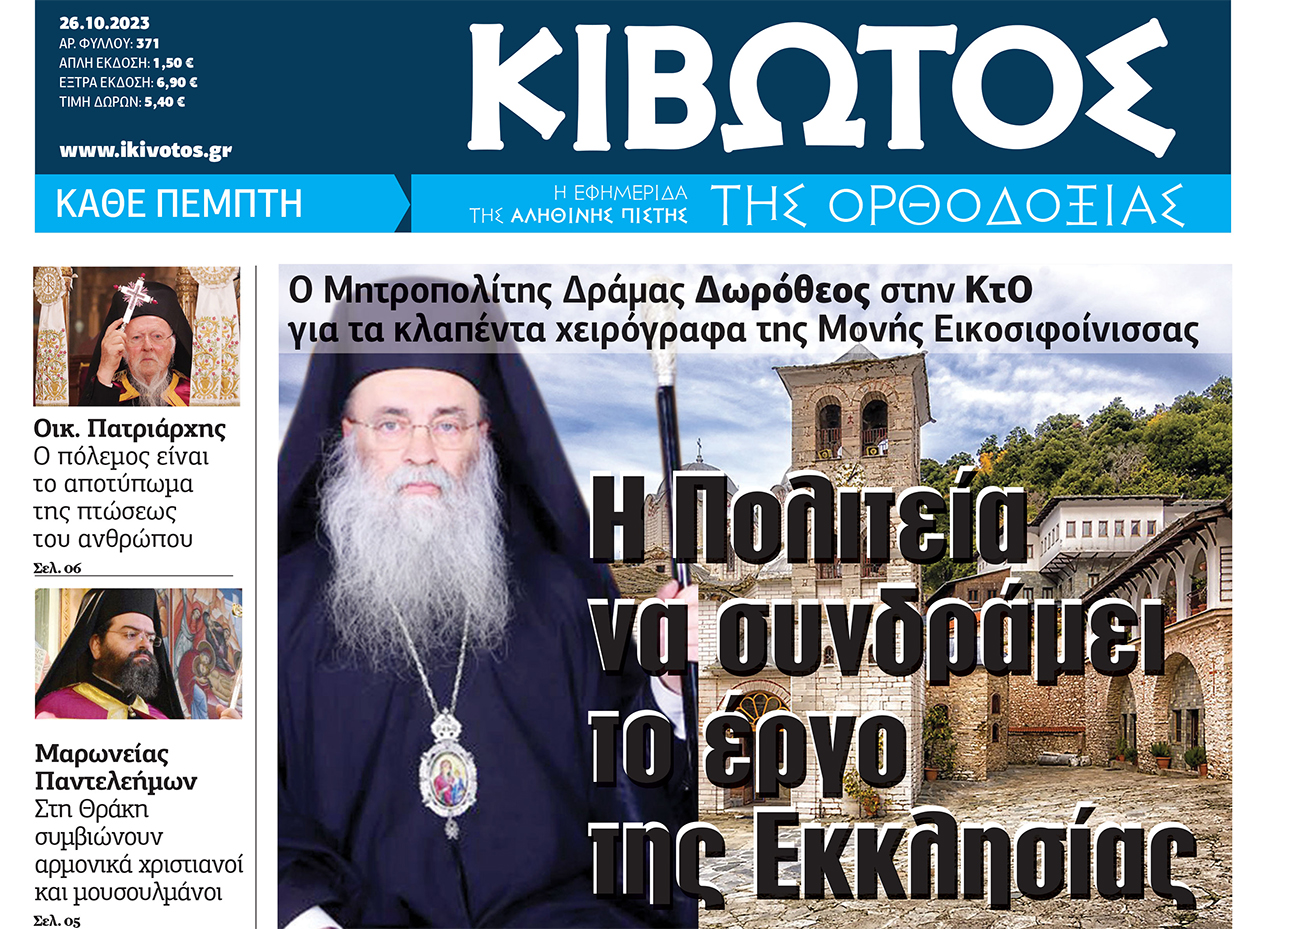 Την Πέμπτη, 26 Οκτωβρίου, κυκλοφορεί το νέο φύλλο της Εφημερίδας «Κιβωτός της Ορθοδοξίας»